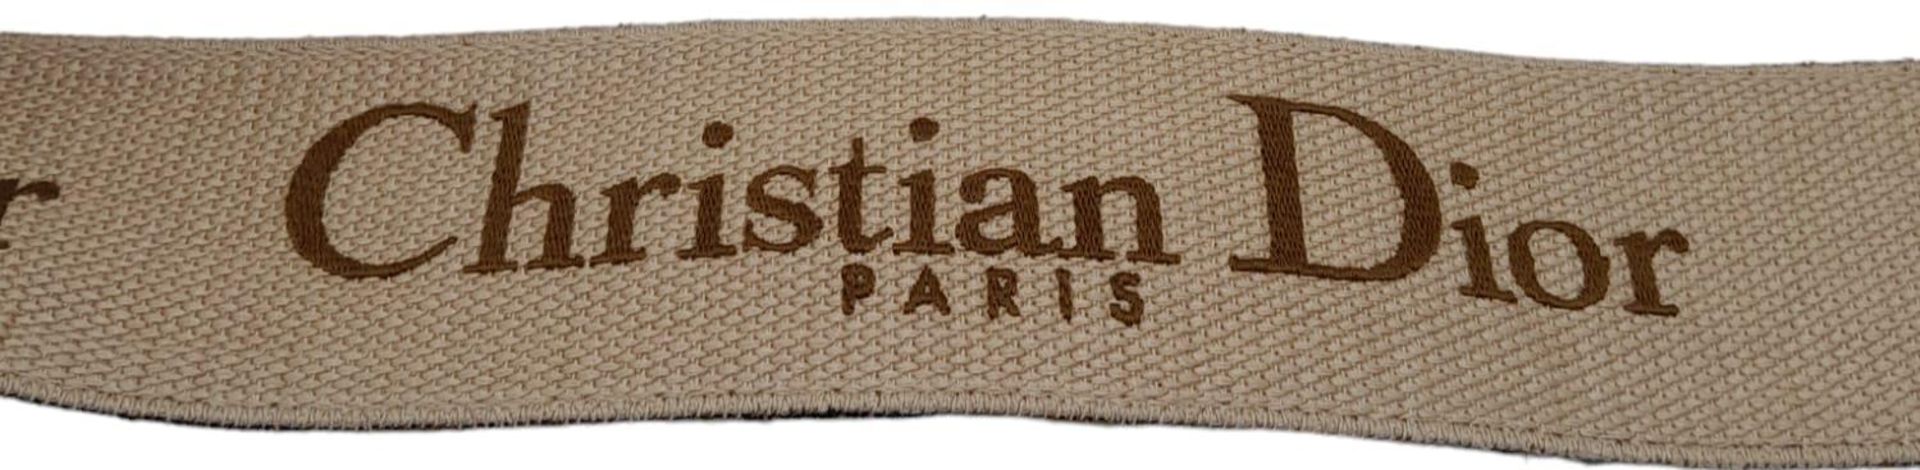 Christian Dior Saddle Handbag. Brown monogrammed velvet bag with gold tone hardware. Additional, - Image 8 of 9